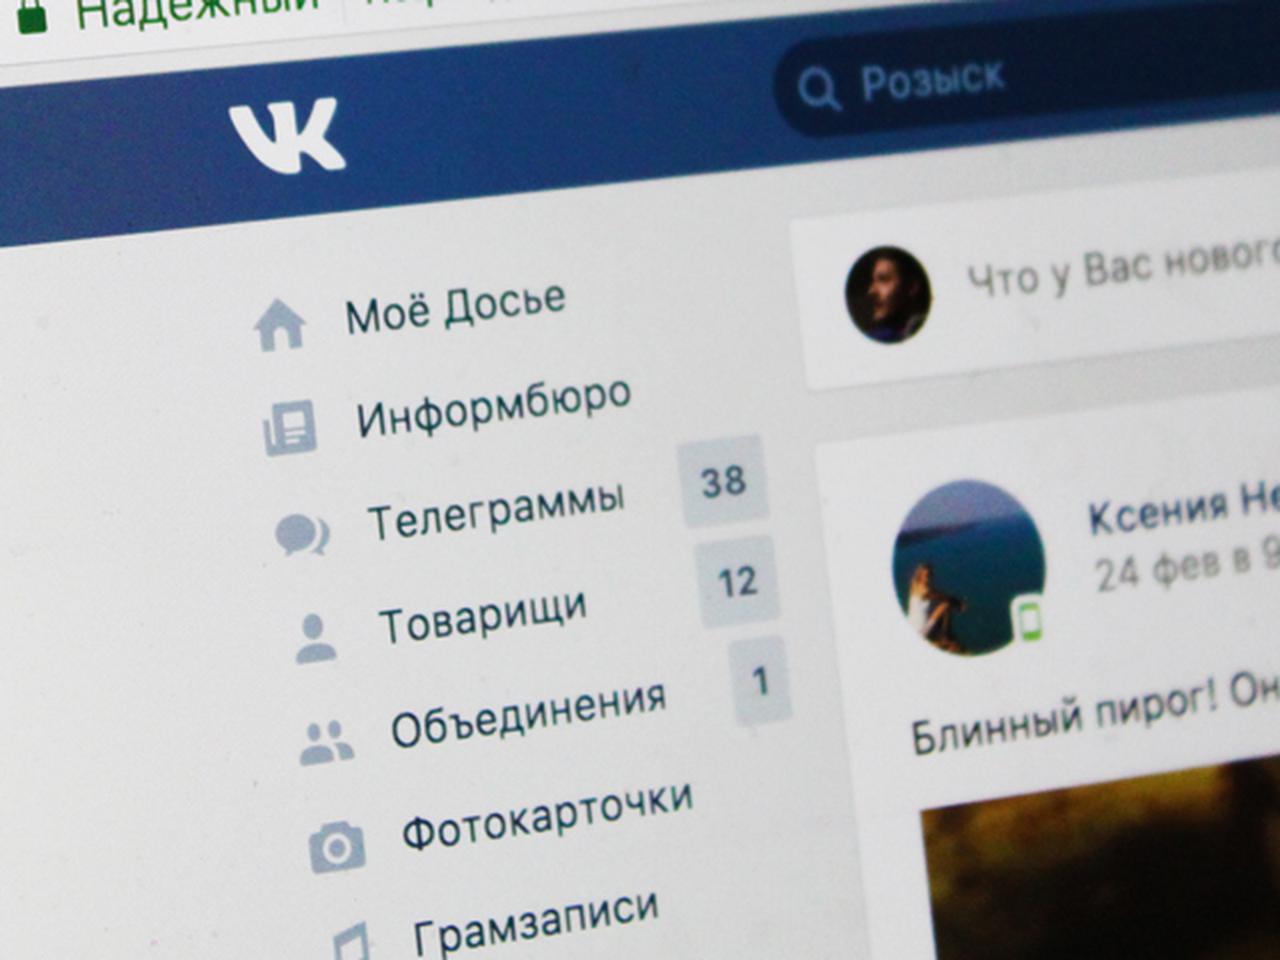 Редактор статей ВКонтакте: учимся публиковать статьи в ВК